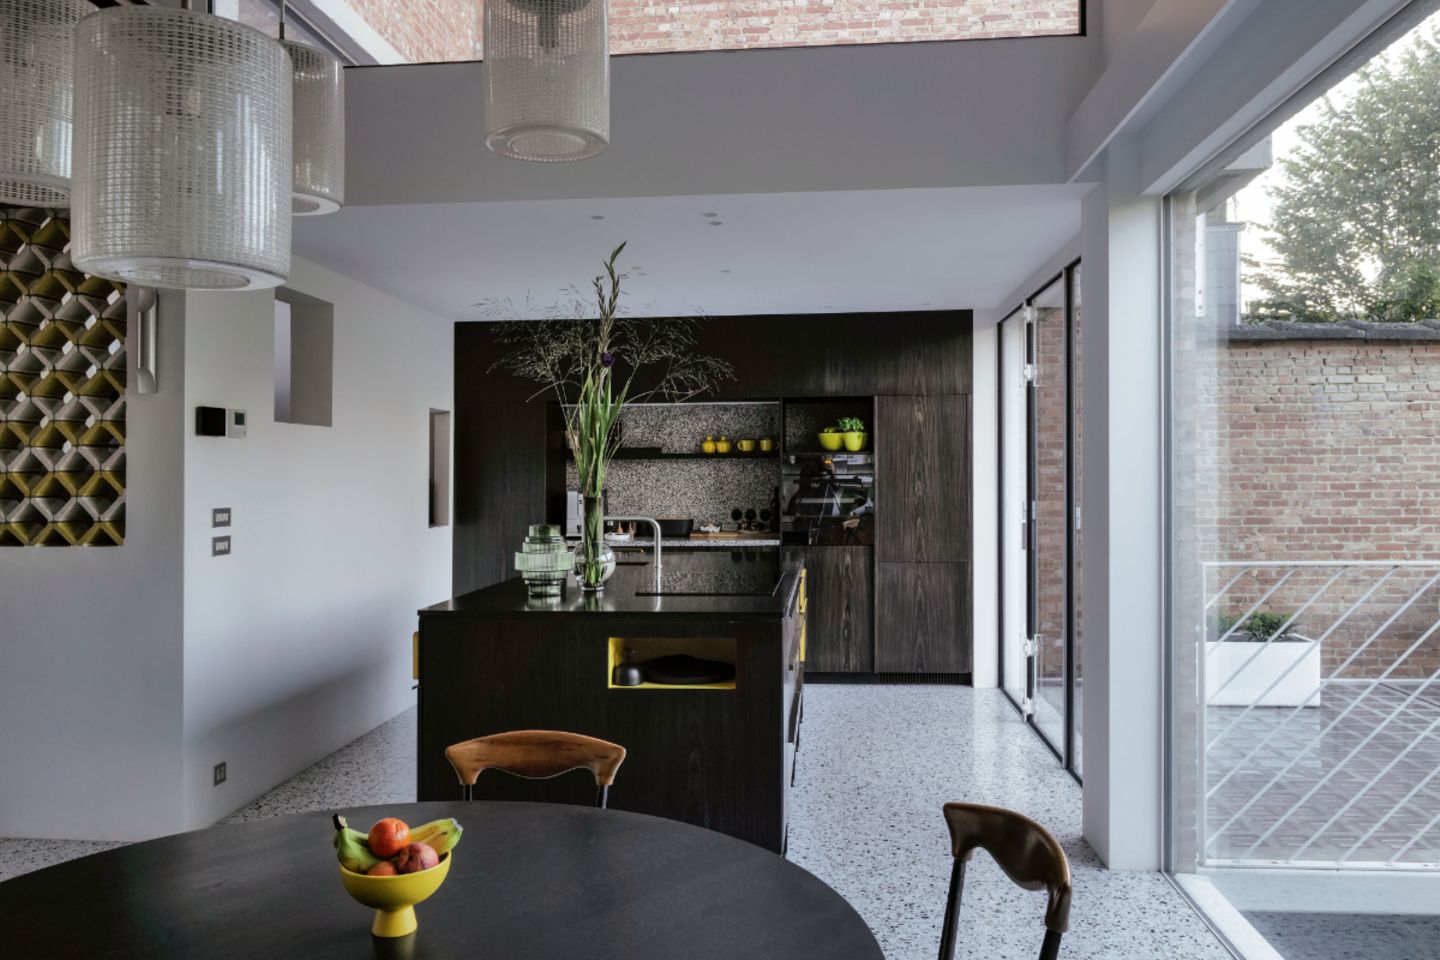 Offene Küche mit Terrazzoboden und Einrichtung in dunklem Holz